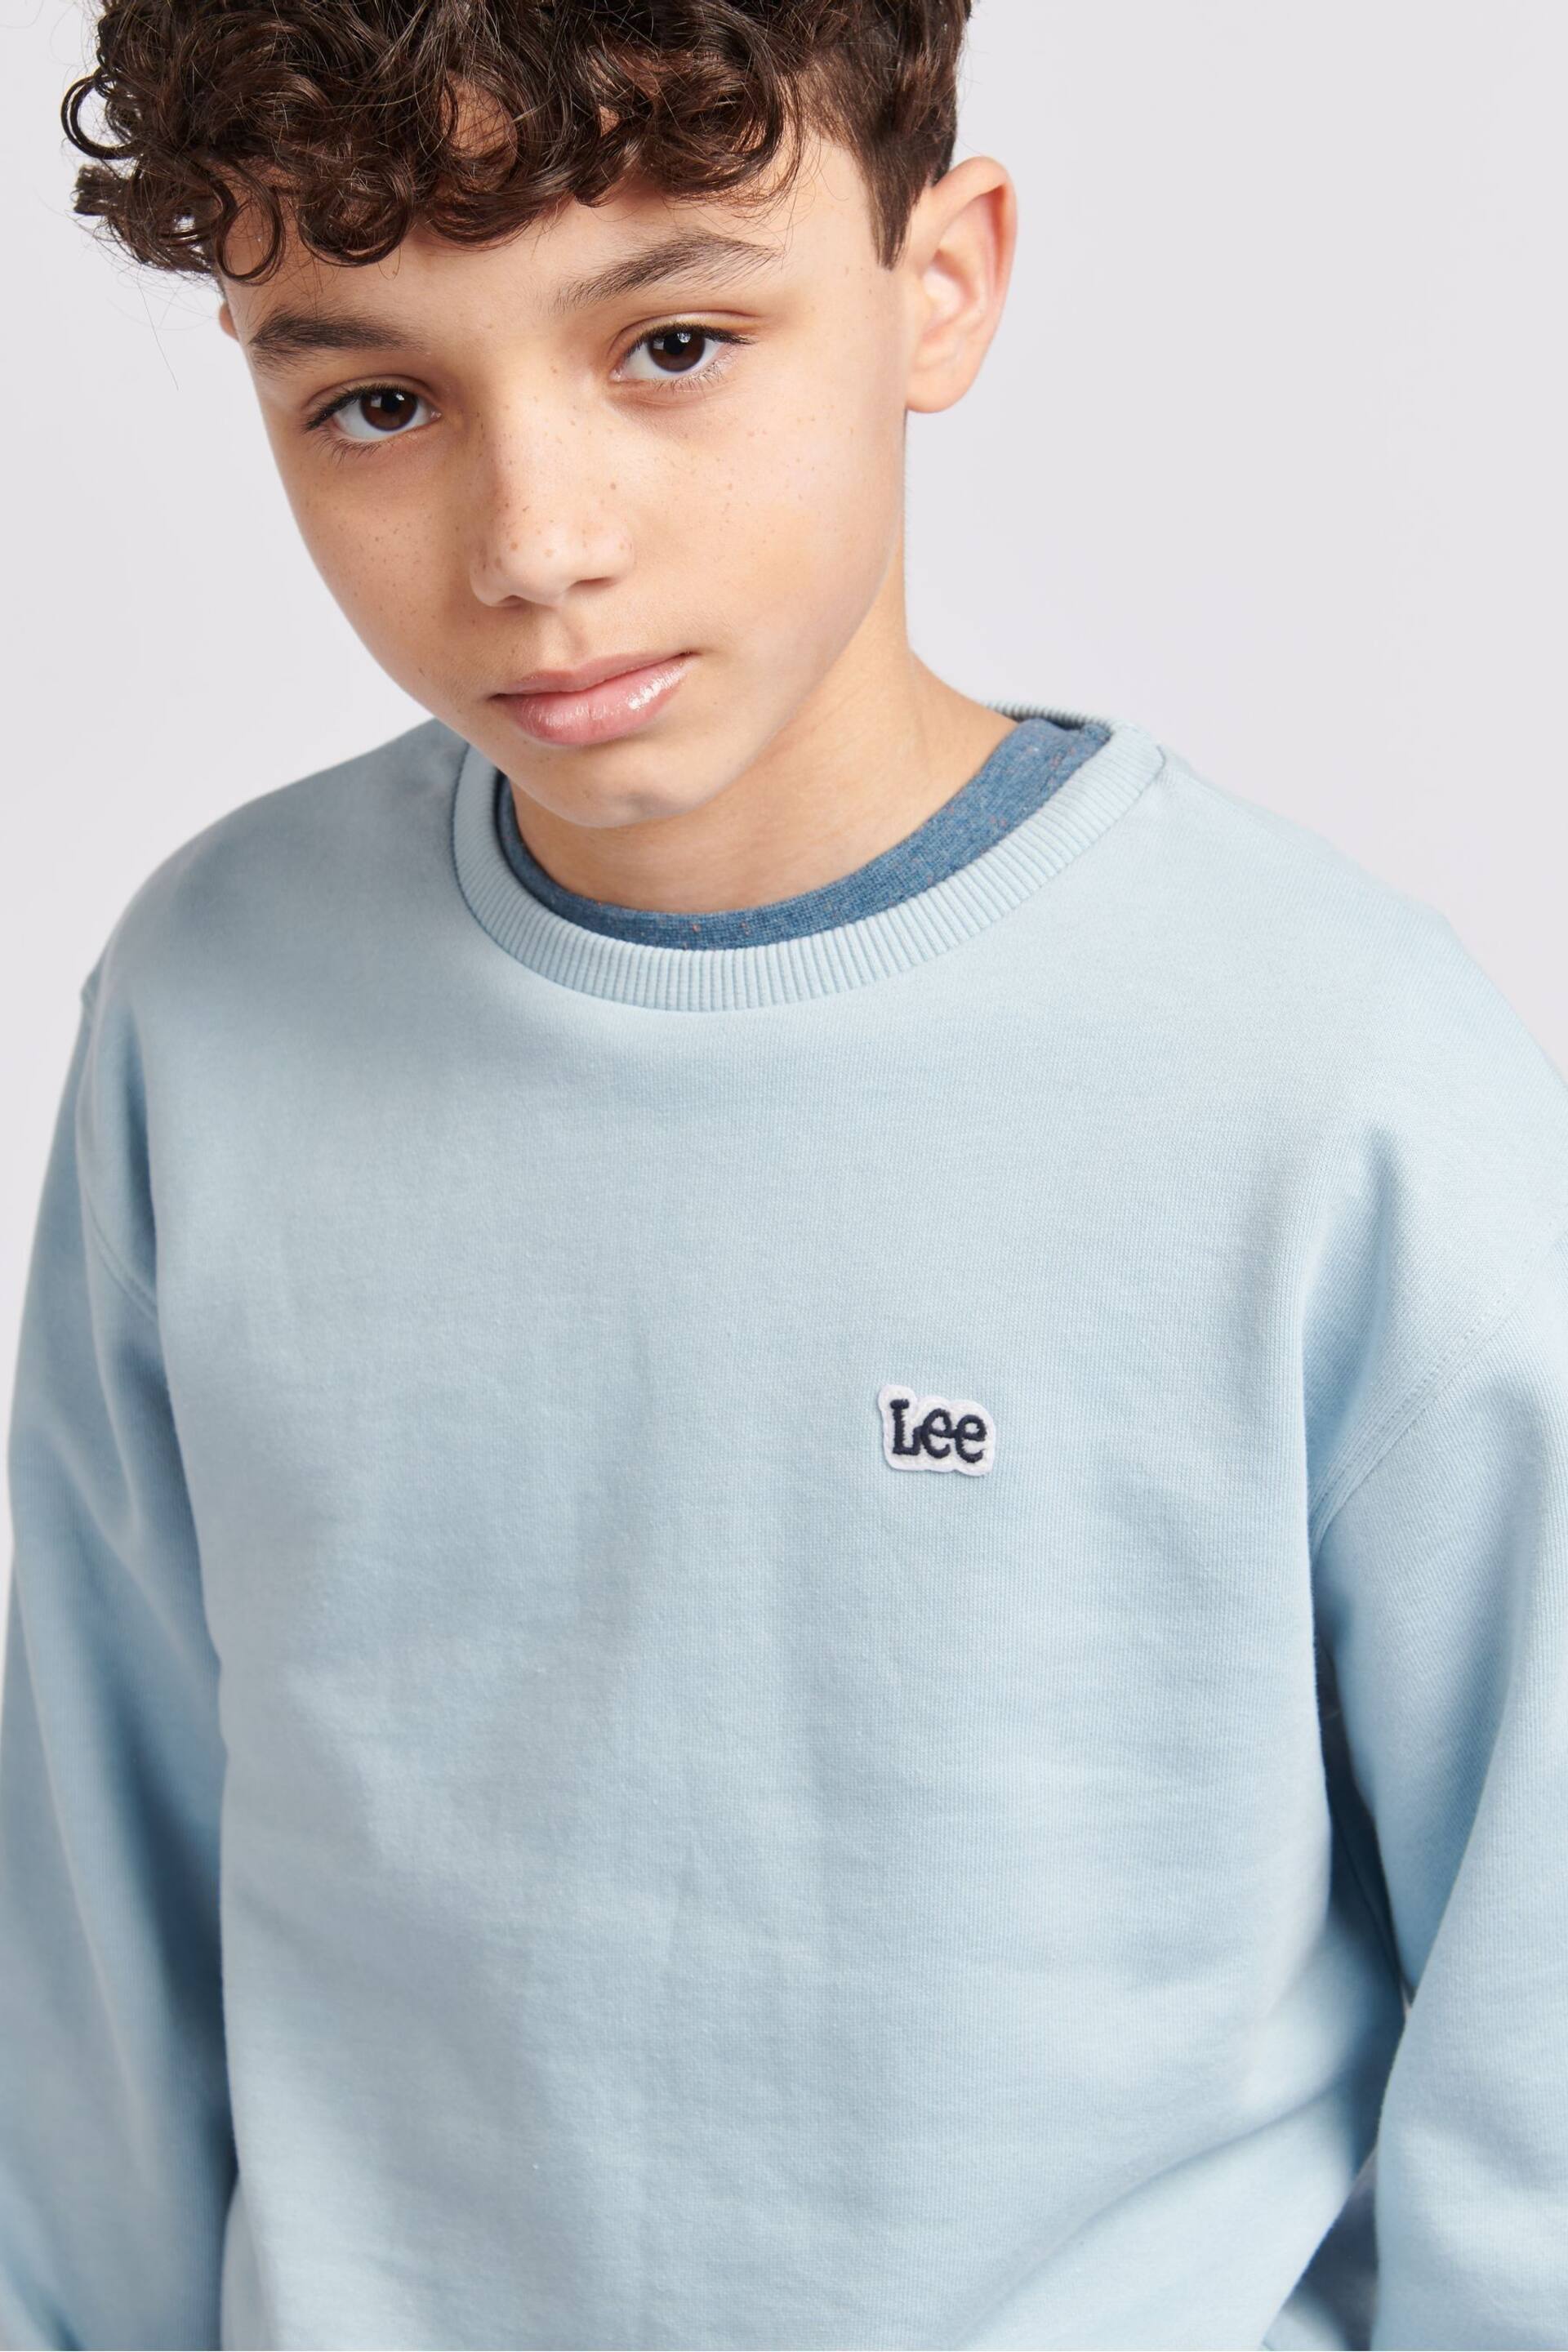 Lee Boys Badge Sweatshirt - Image 3 of 8